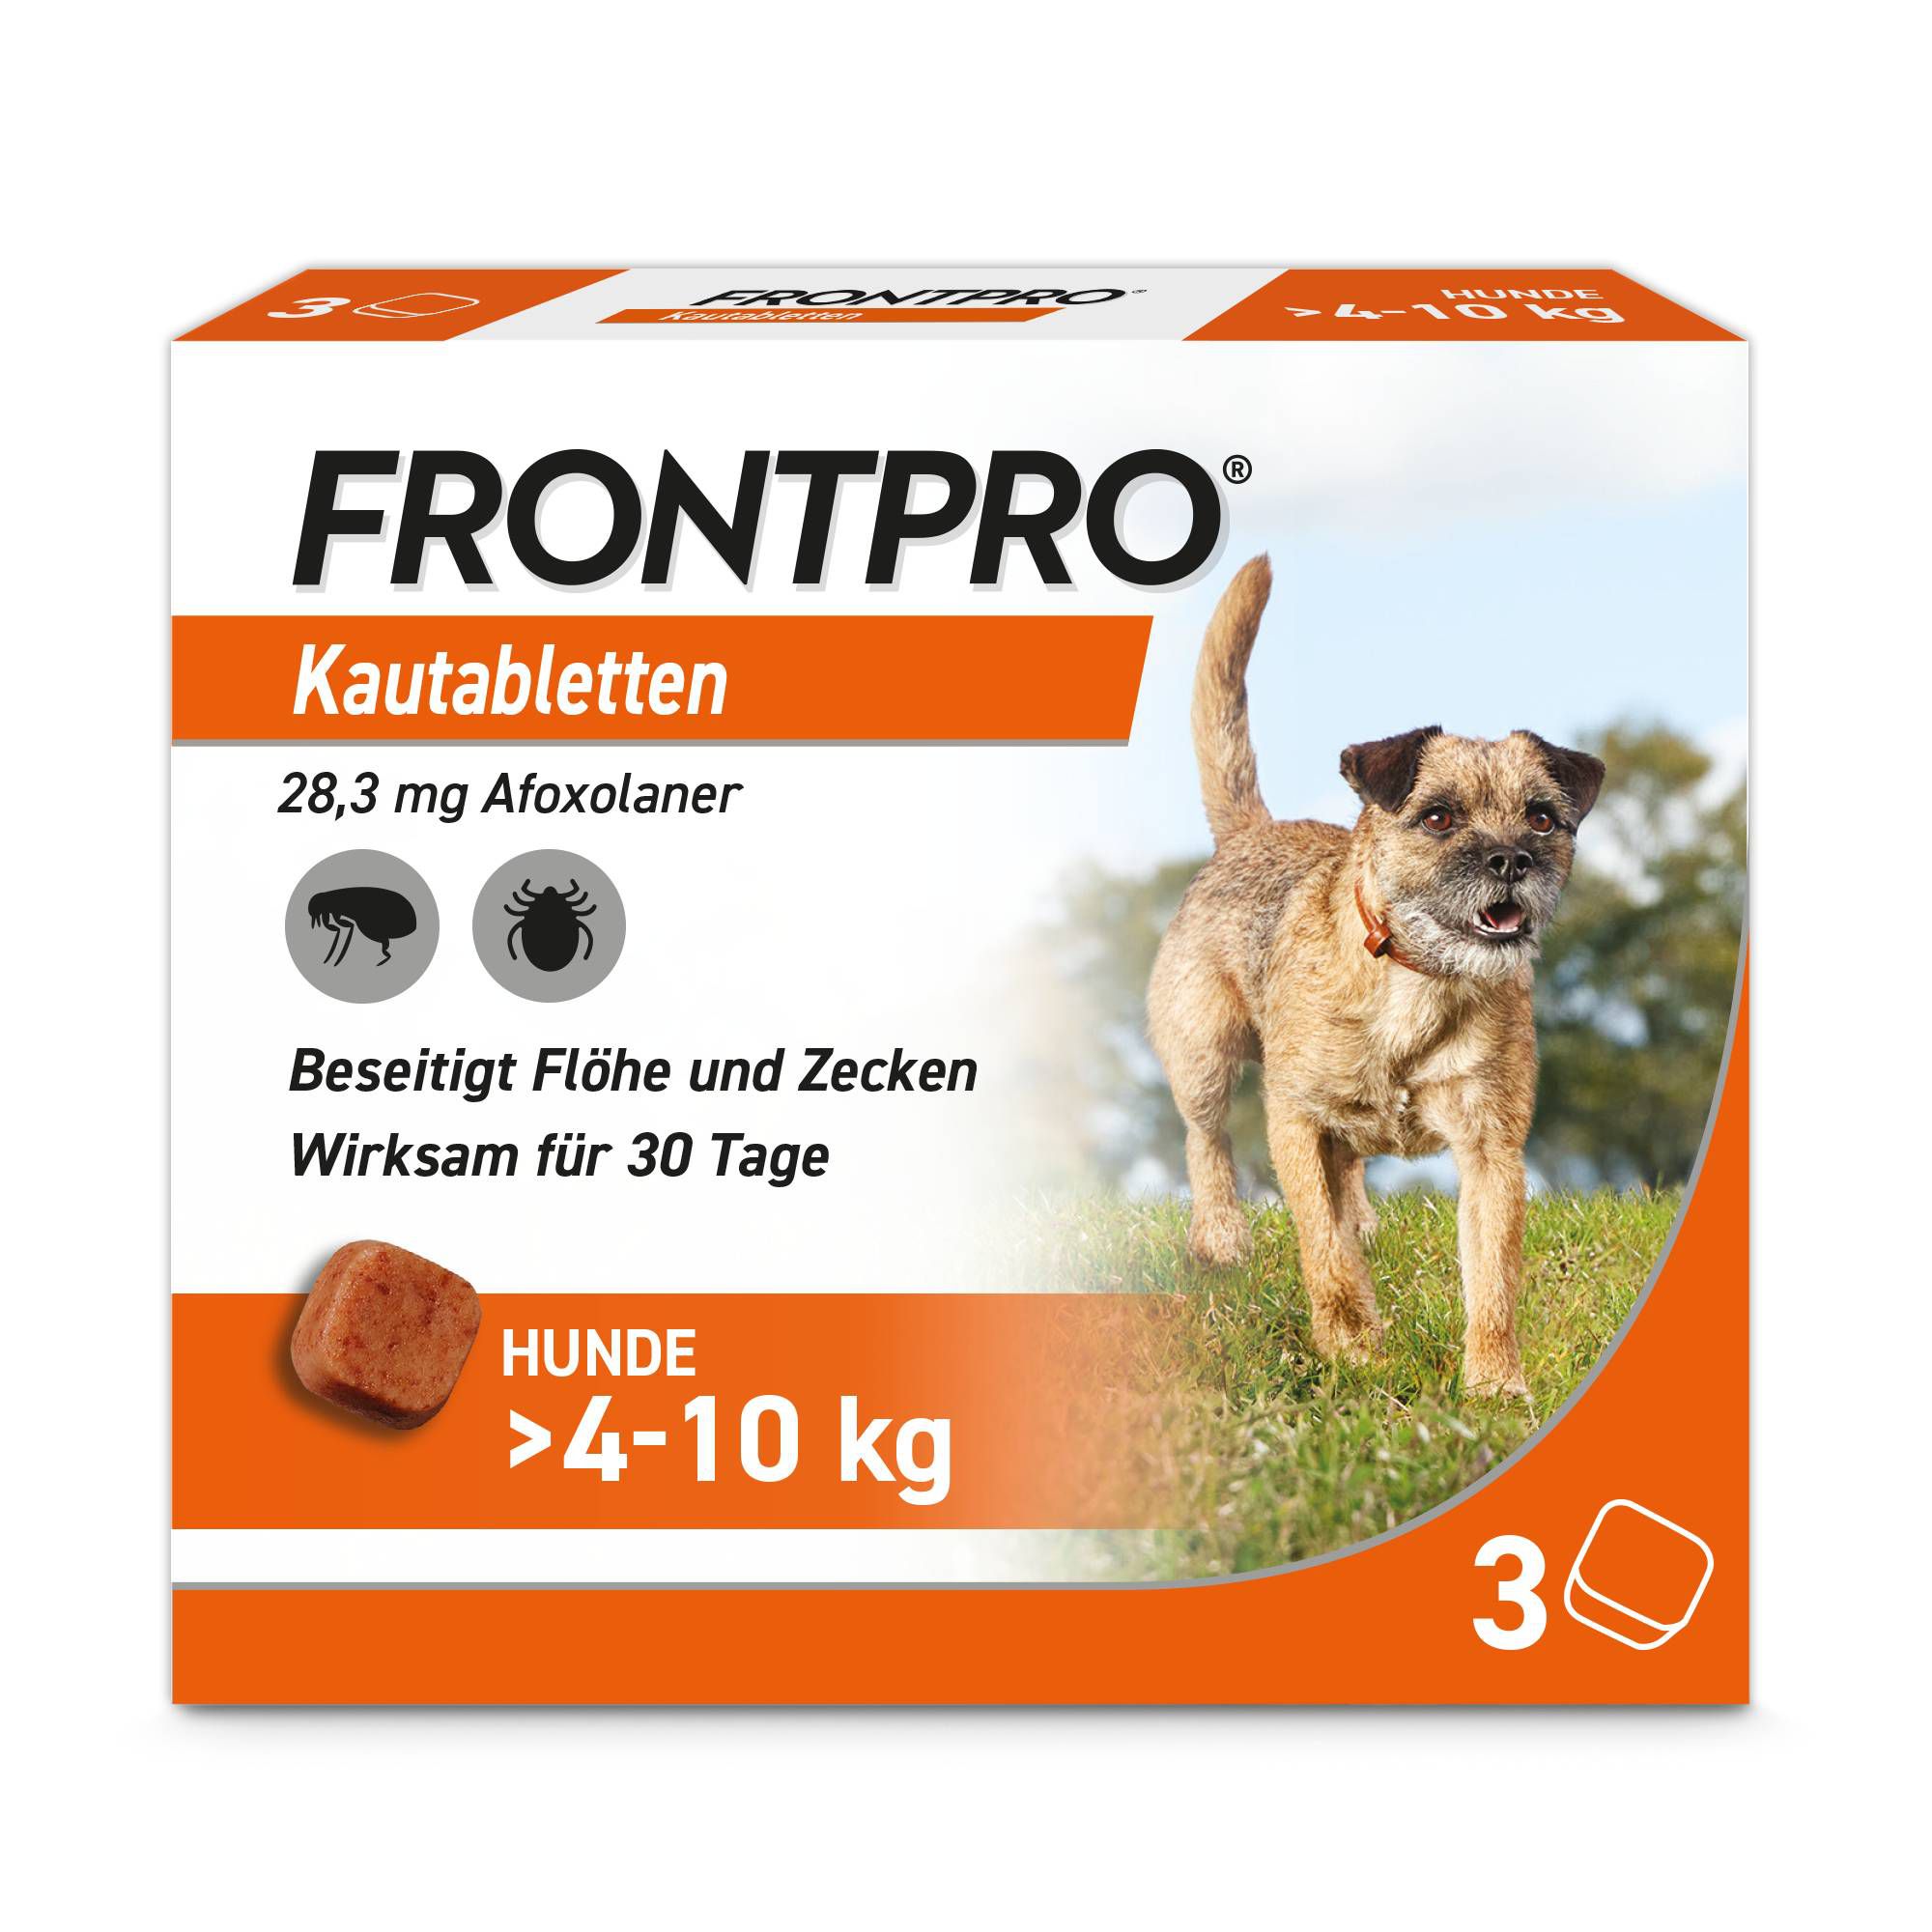 FRONTPRO® Kautablette gegen Zecken und Flöhe für Hunde (>4-10kg)